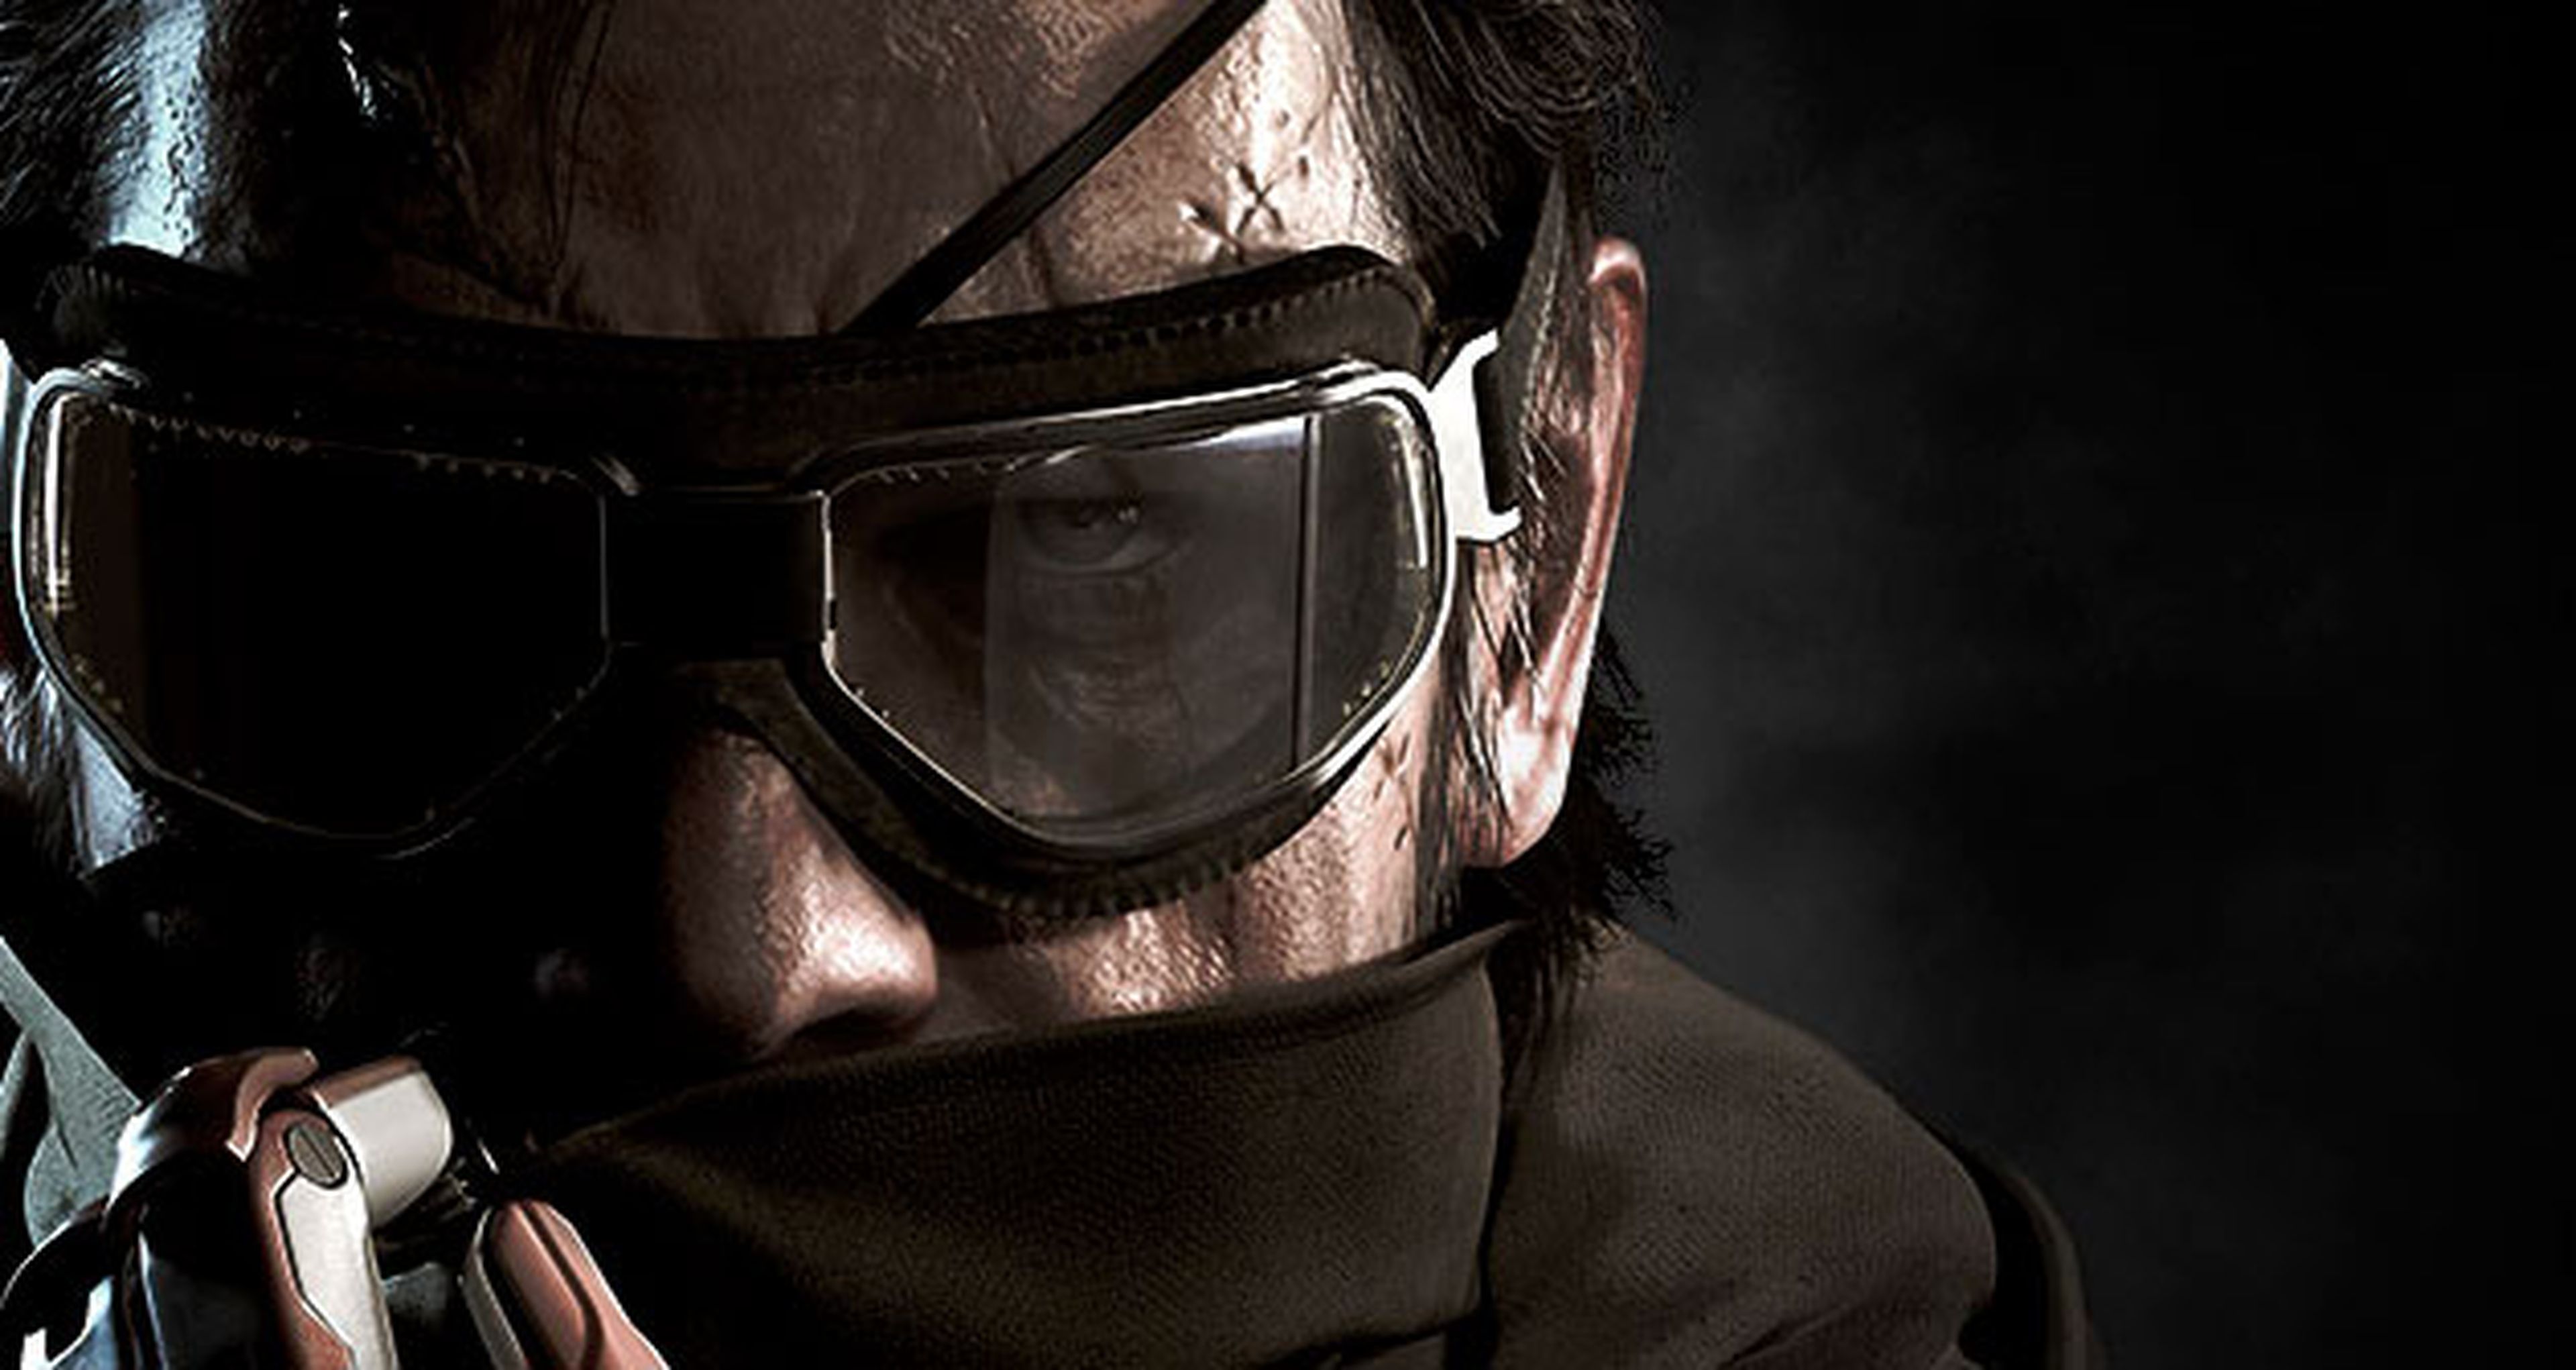 Metal Gear Solid V: The Phantom Pain, su edición coleccionista en exclusiva en GAME